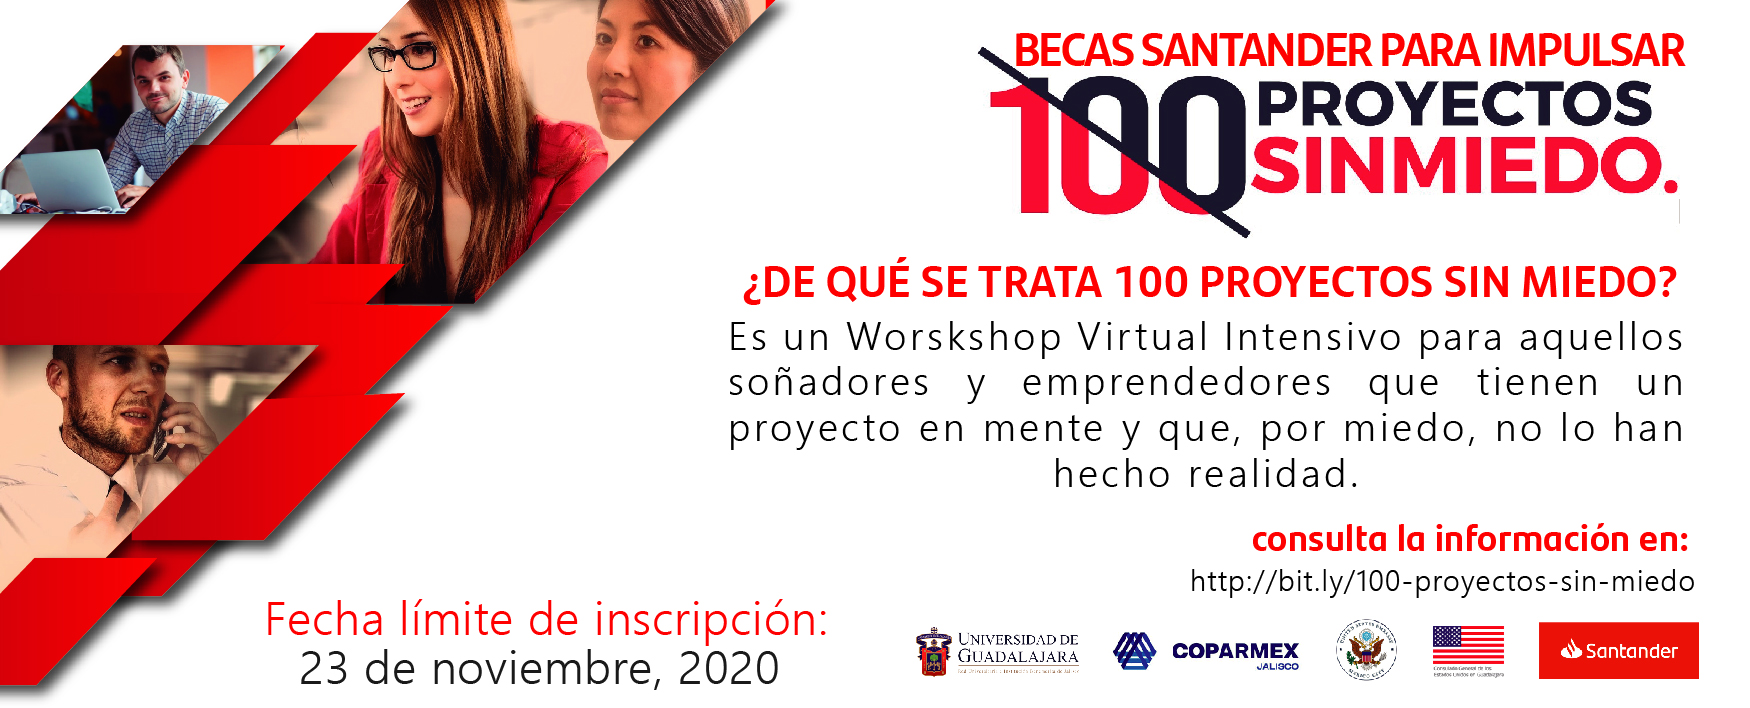 Programa de Becas Santander “100 Proyectos sin Miedo”